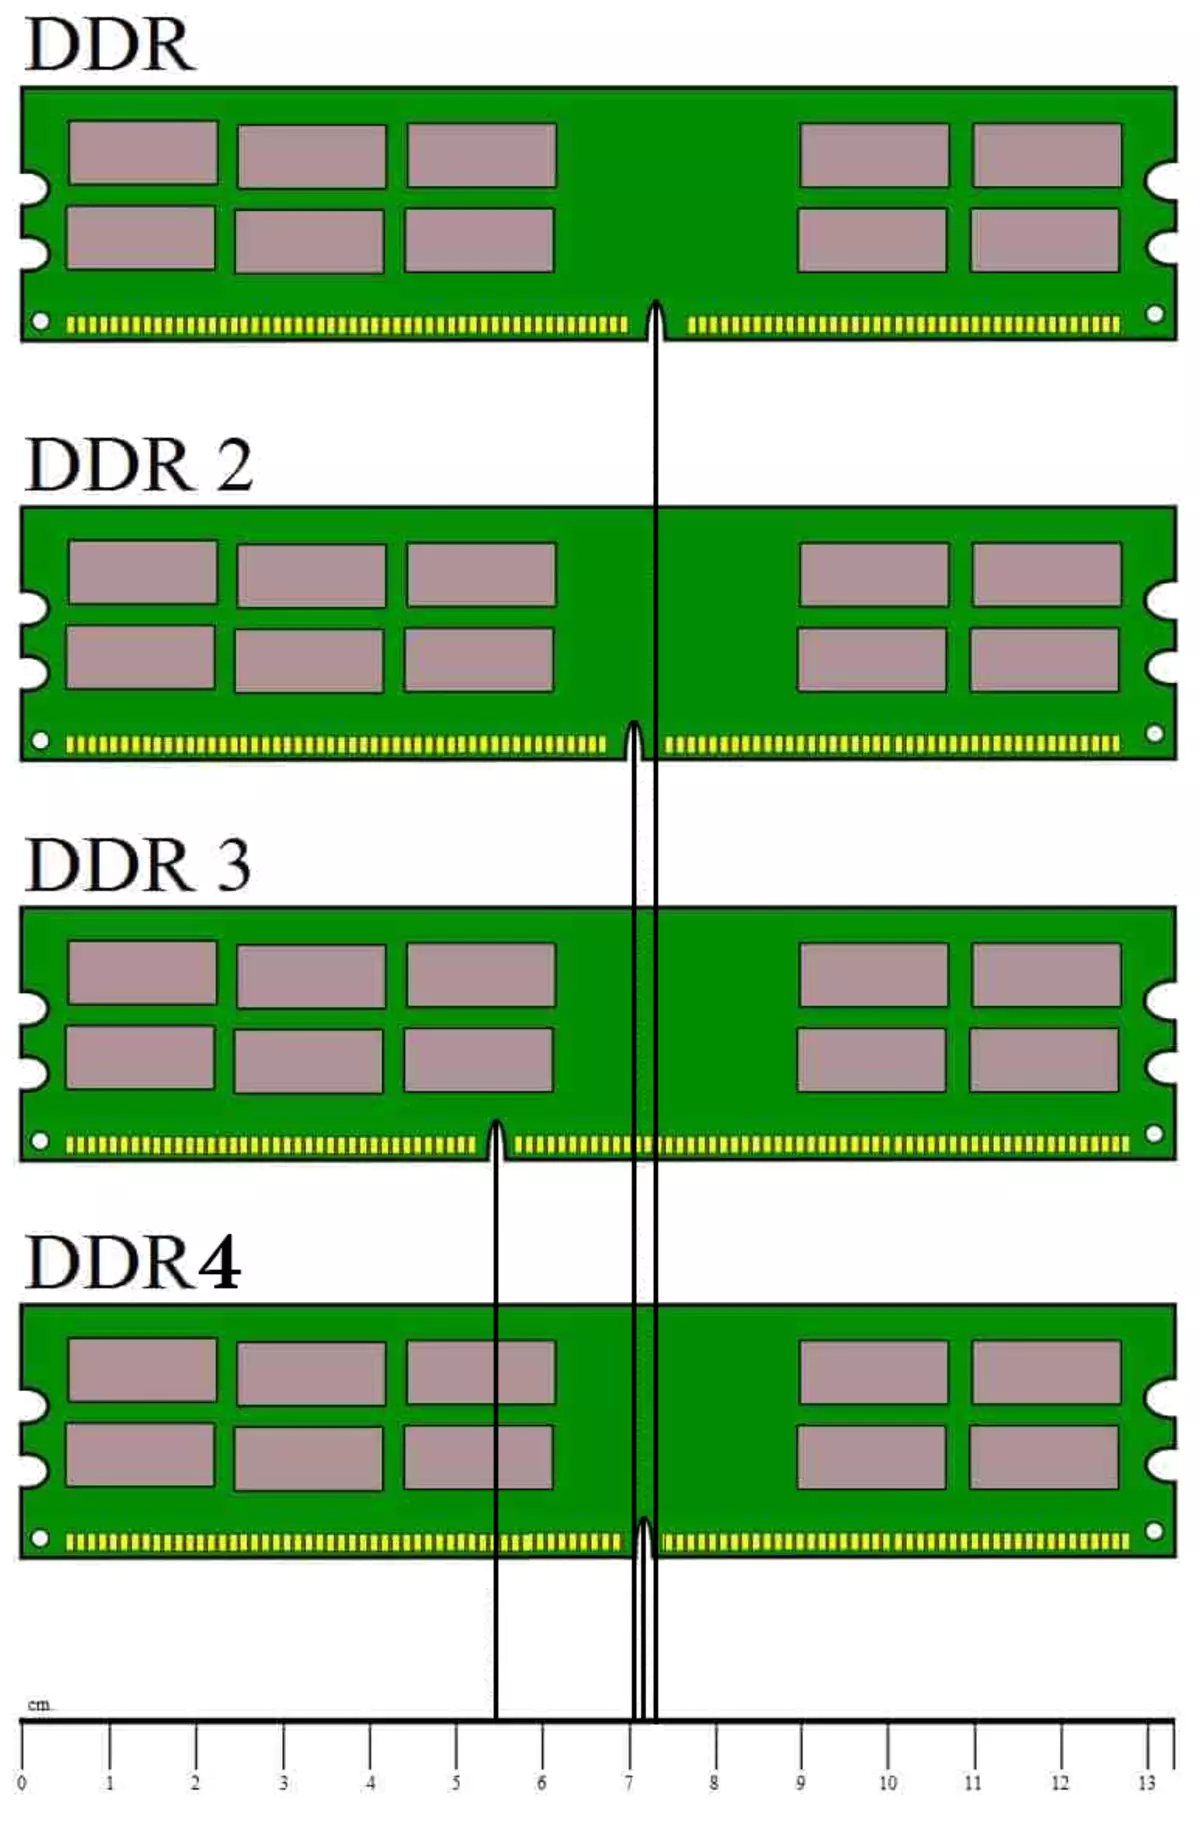 Características construtivas de diferentes tipos de RAM